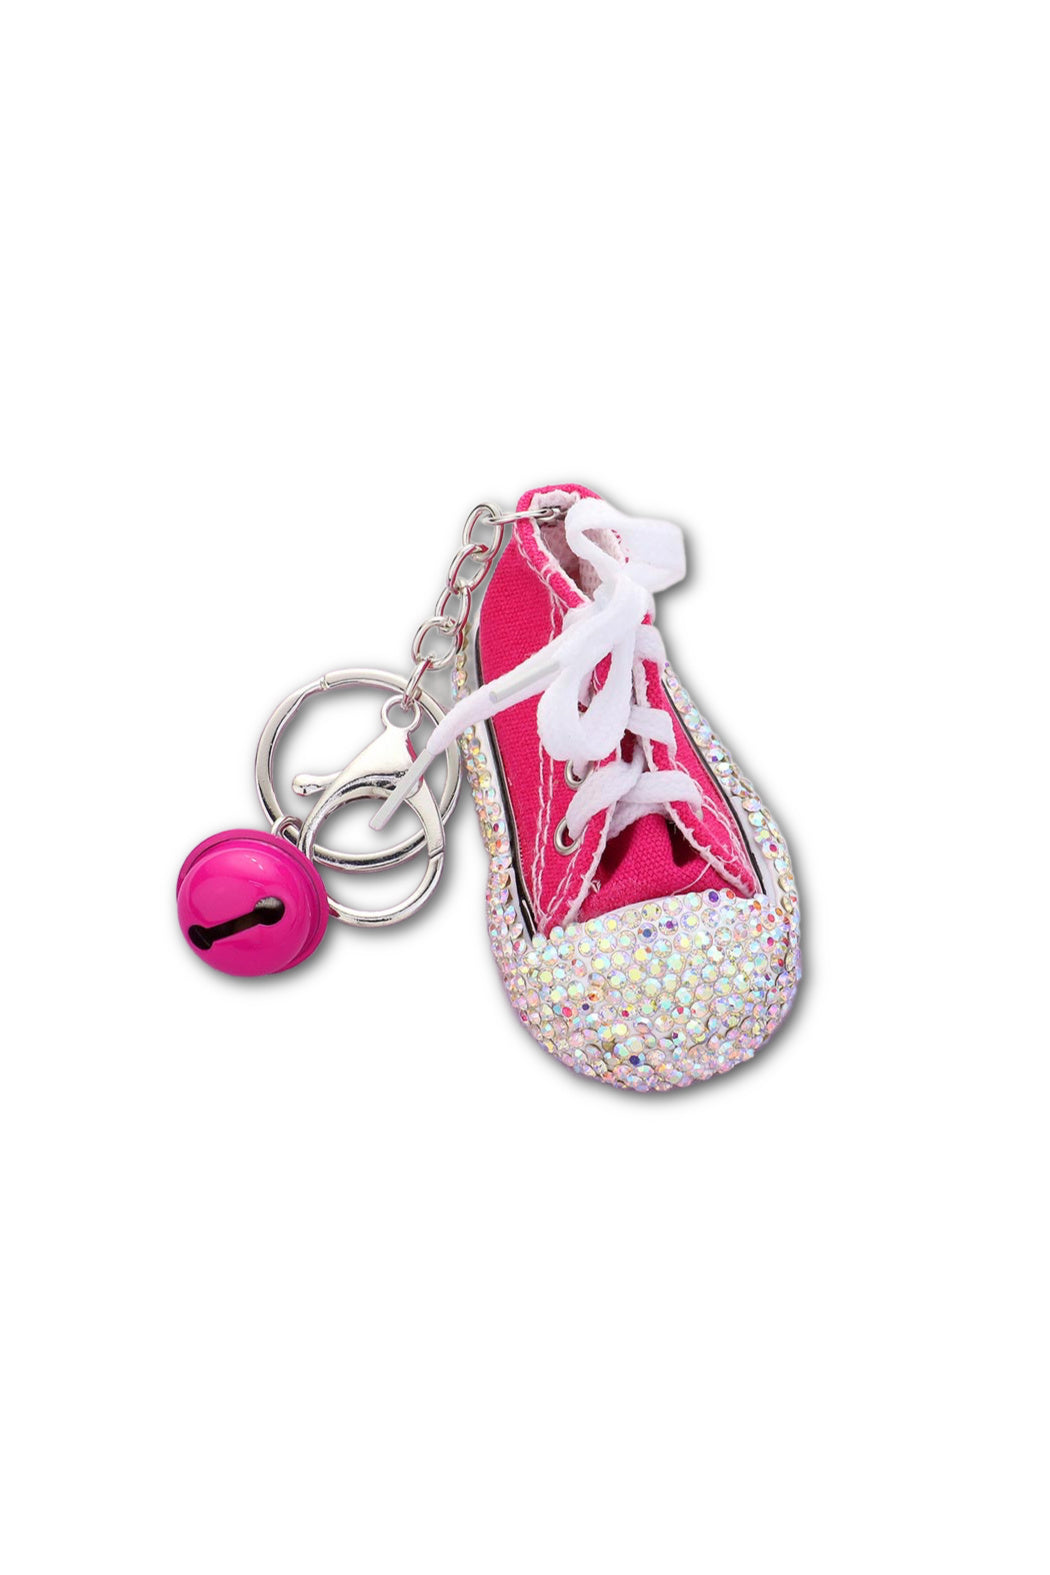 Little Crystal Sneaker Keychain